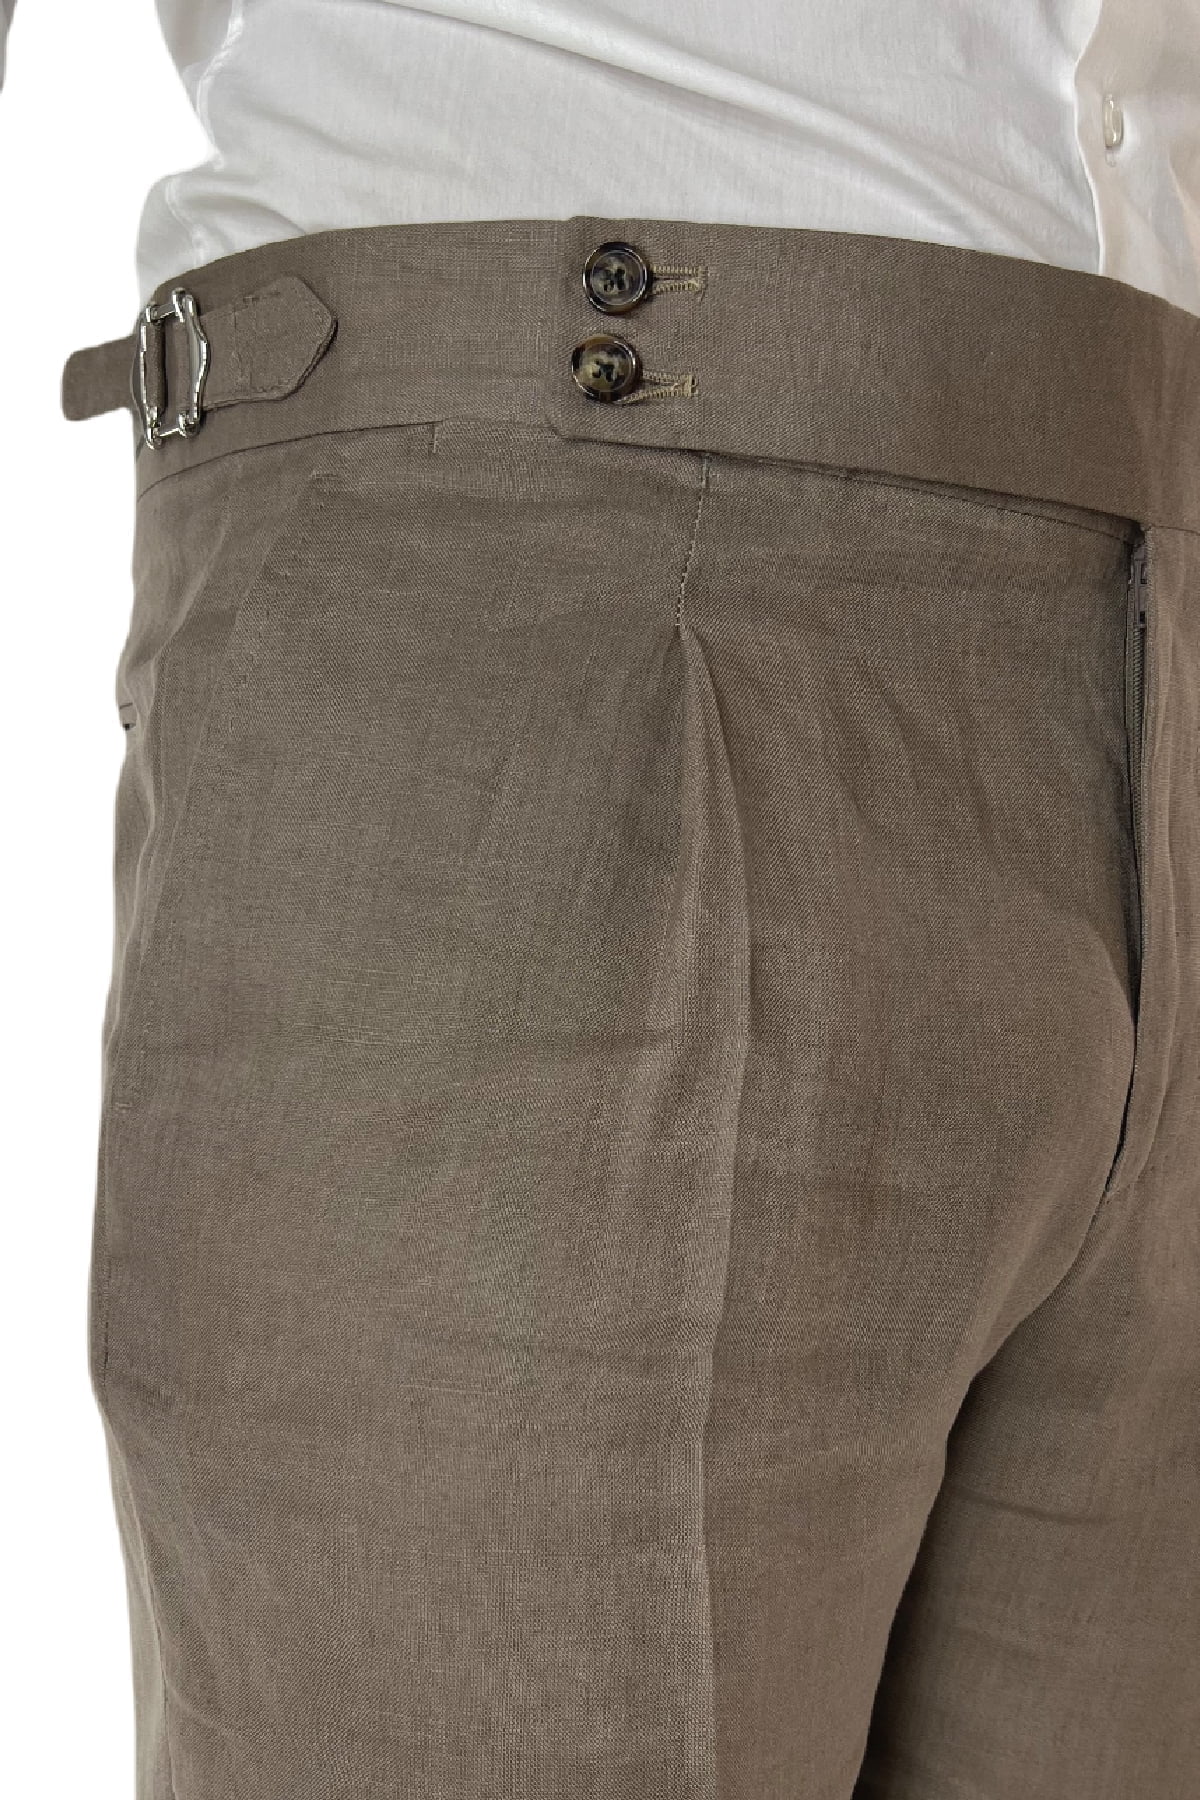 Pantalone uomo fango in lino 100% vita alta con pinces fibbie laterali e risvolto 4cm